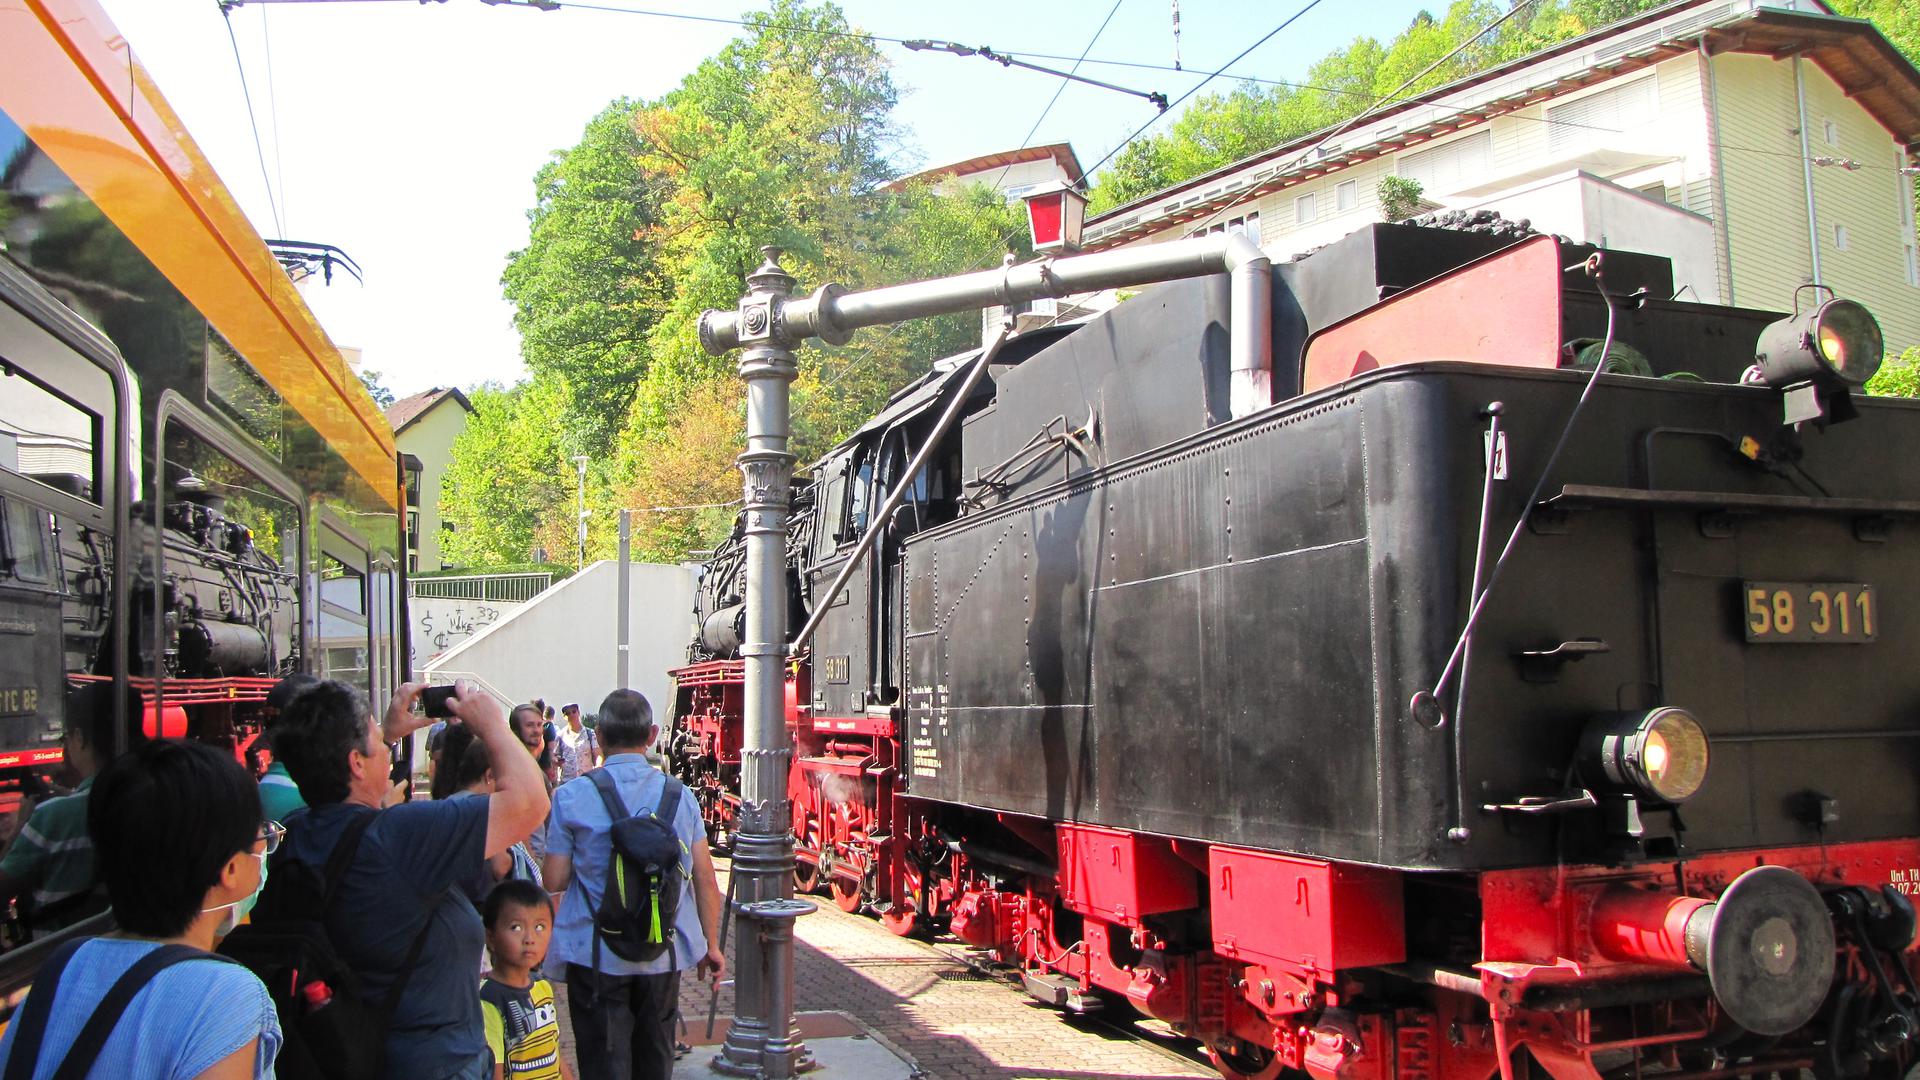 Fahrt mit dem Dampfzug durchs Albtal: Im Bahnhof Bad Herrenalb muss der Wassertank der 101 Jahre alten Lok 58311 aufgefüllt werden